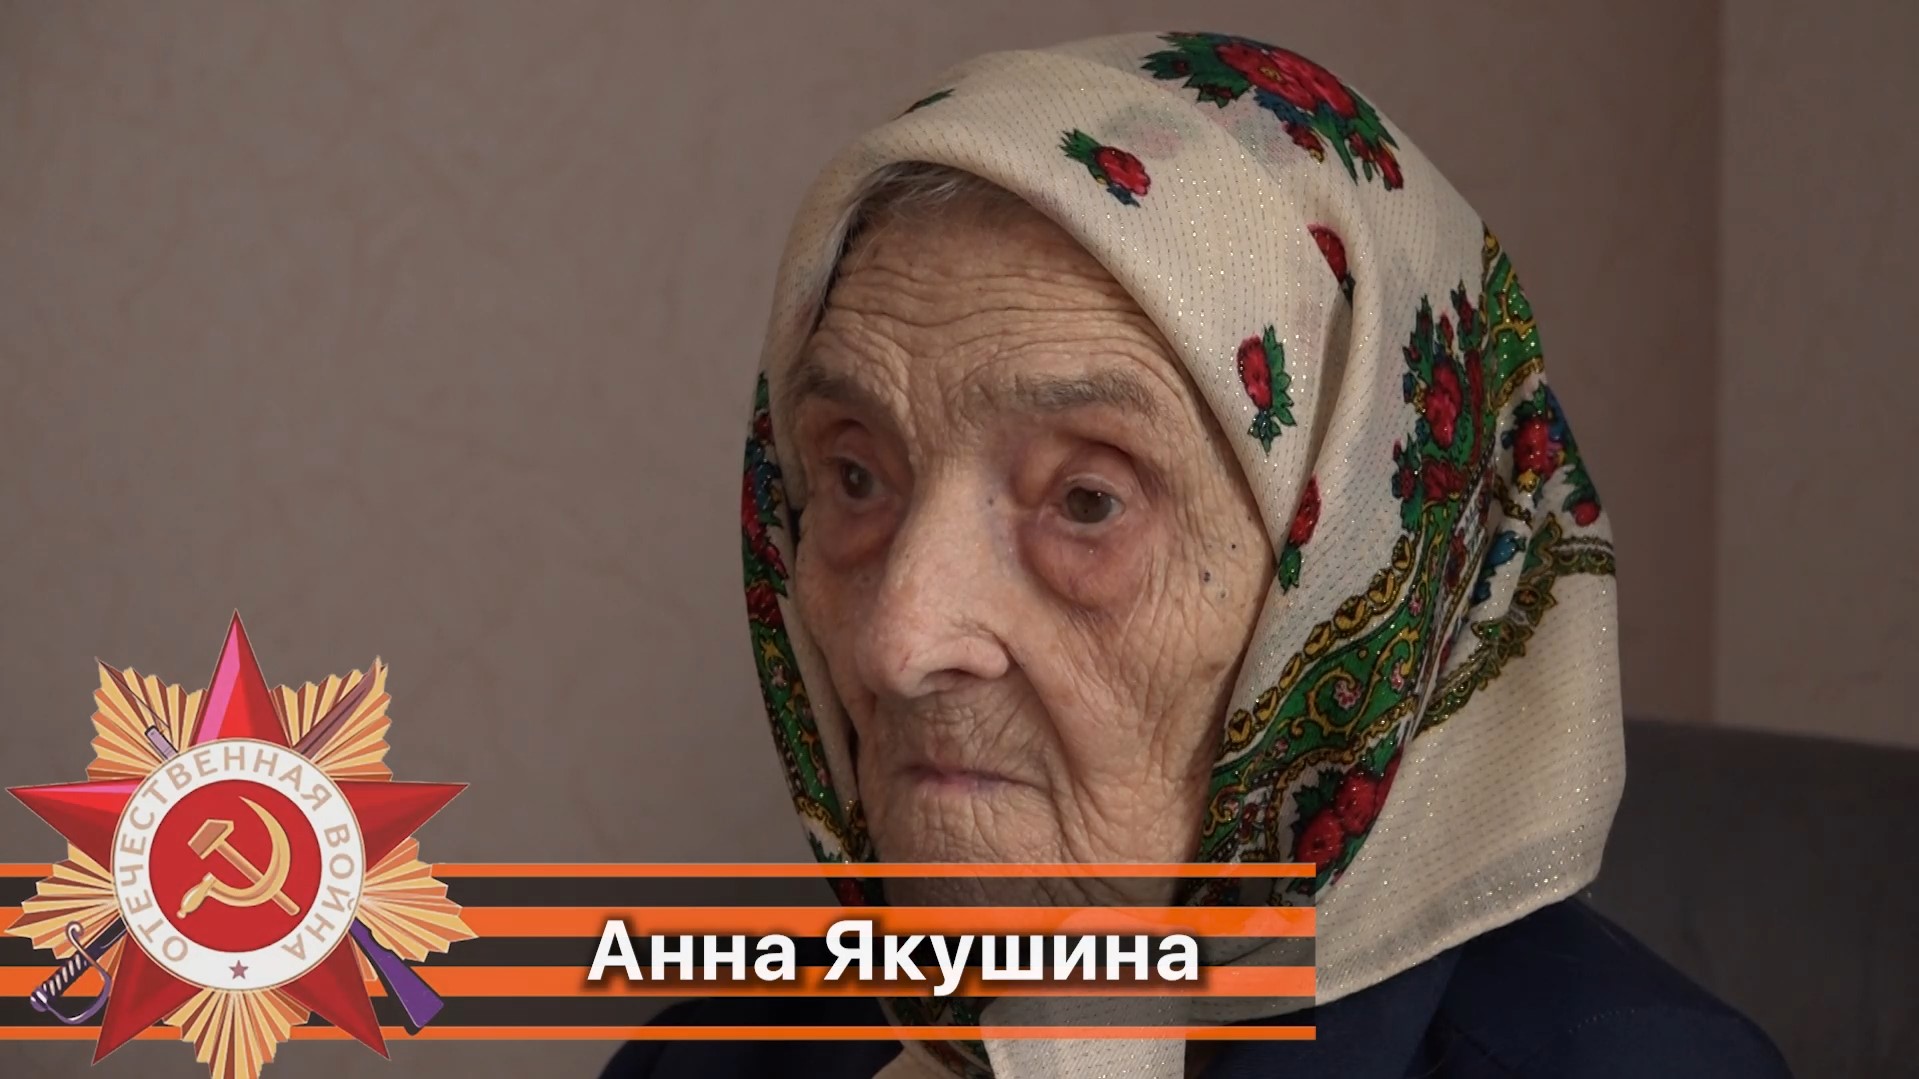 Анна Якушина ветеран великой отечественной войны 1941-1945